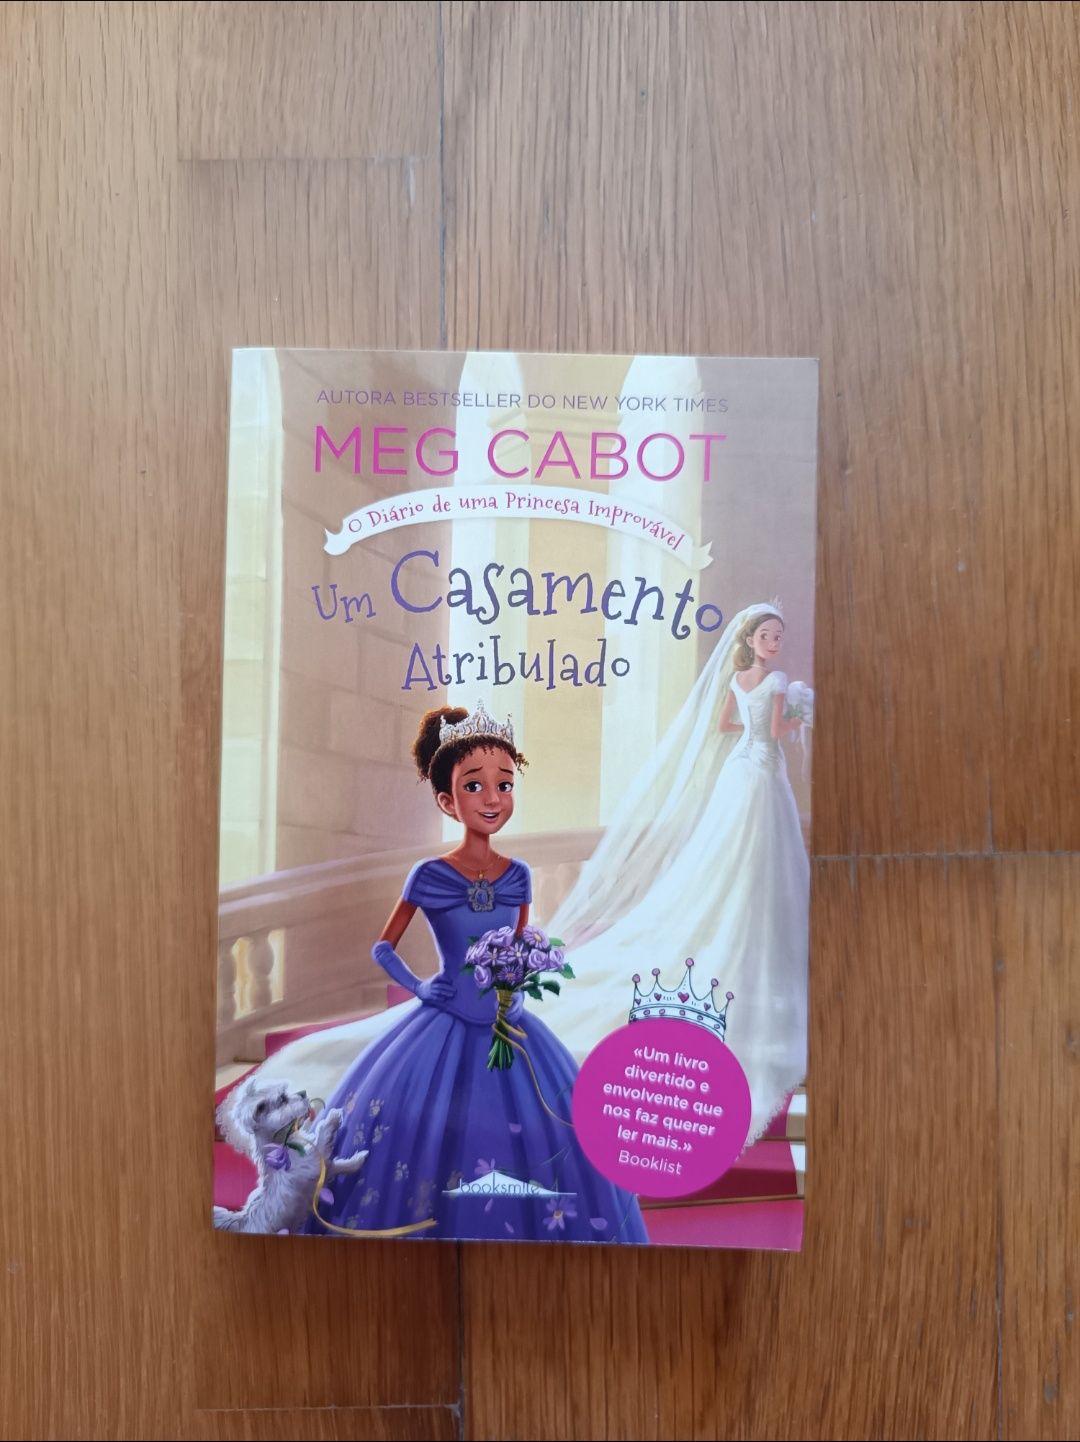 "Diário de Uma Princesa Improvável" - Meg Cabot